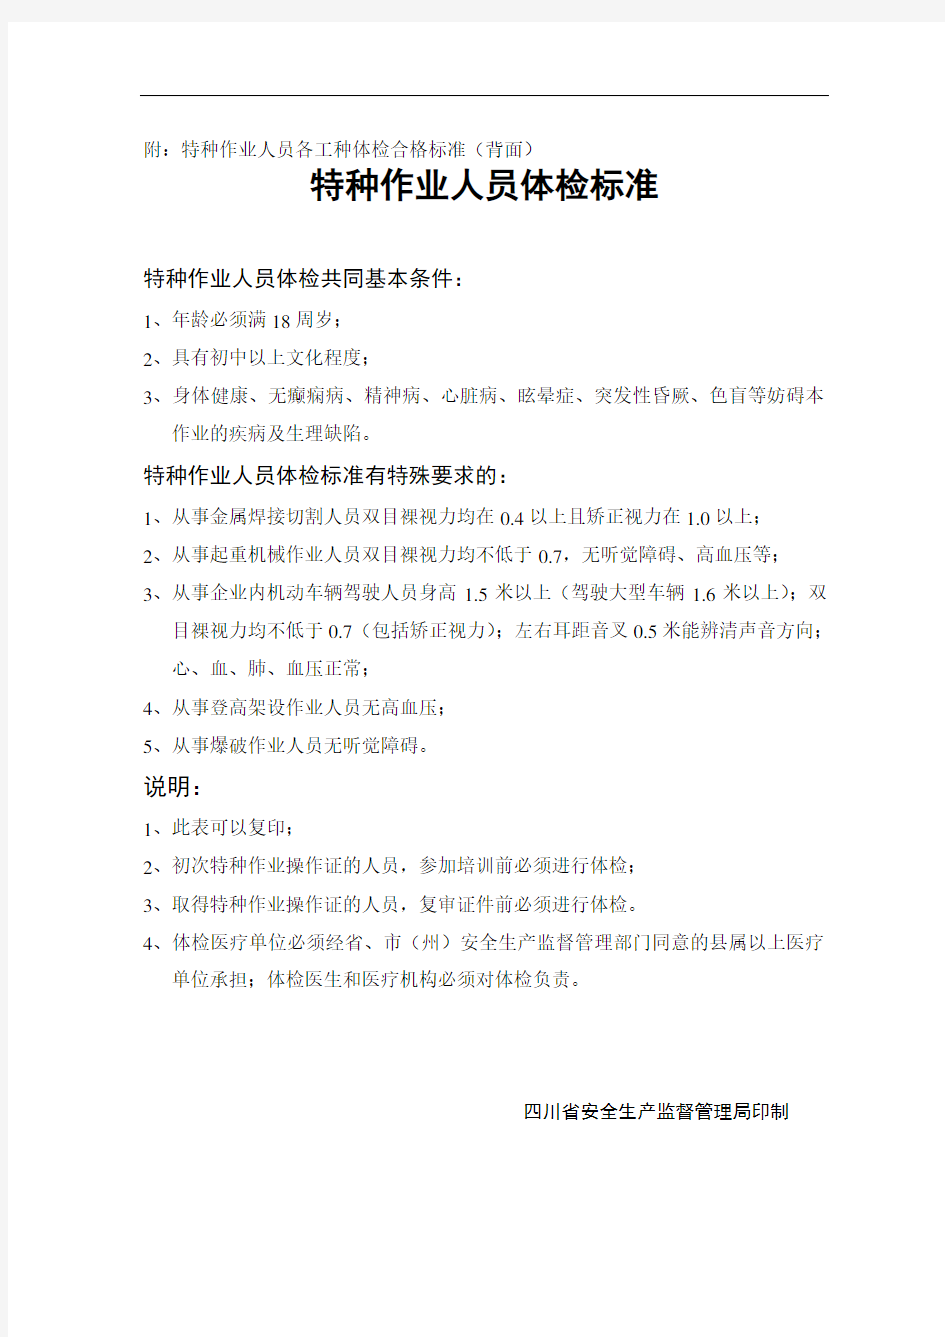 四川省特种作业人员体检表